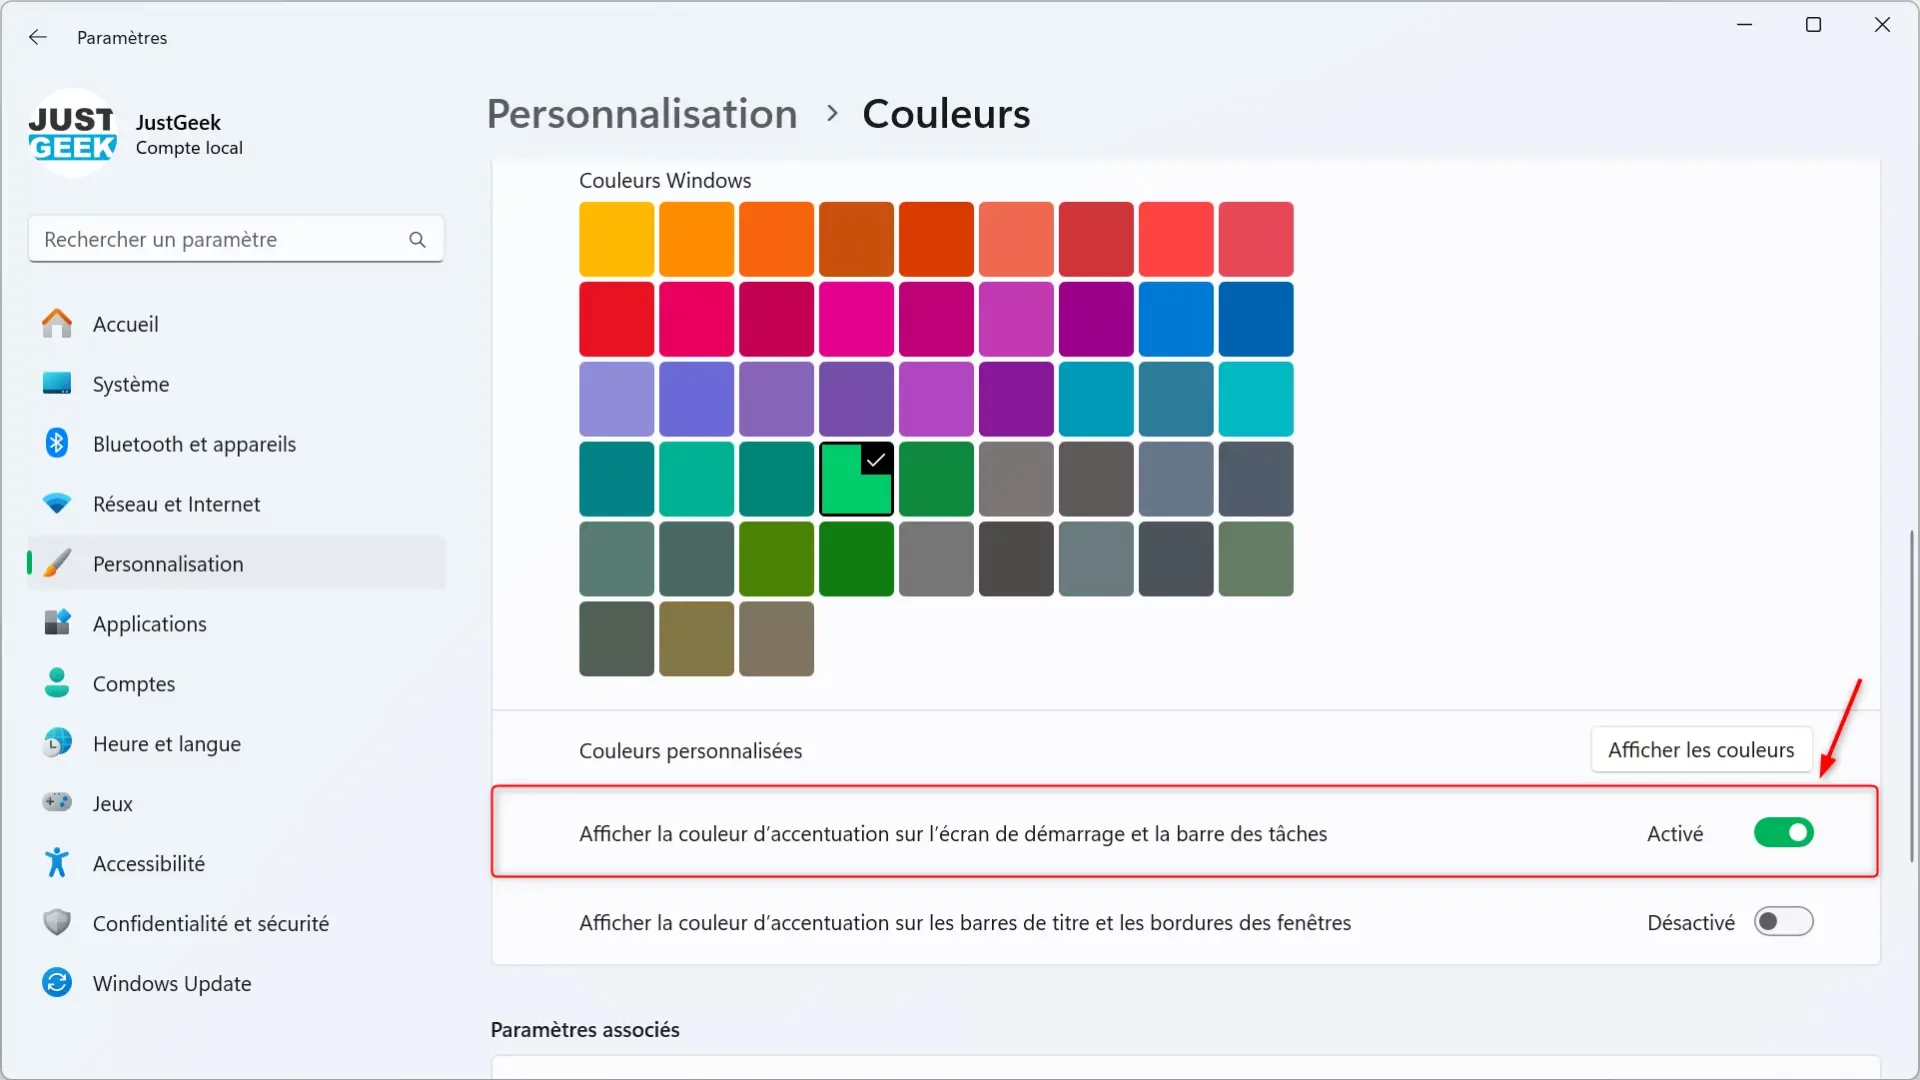 Activer la fonction « Afficher la couleur d'accentuation sur l'écran de démarrage et la barre des tâches ».